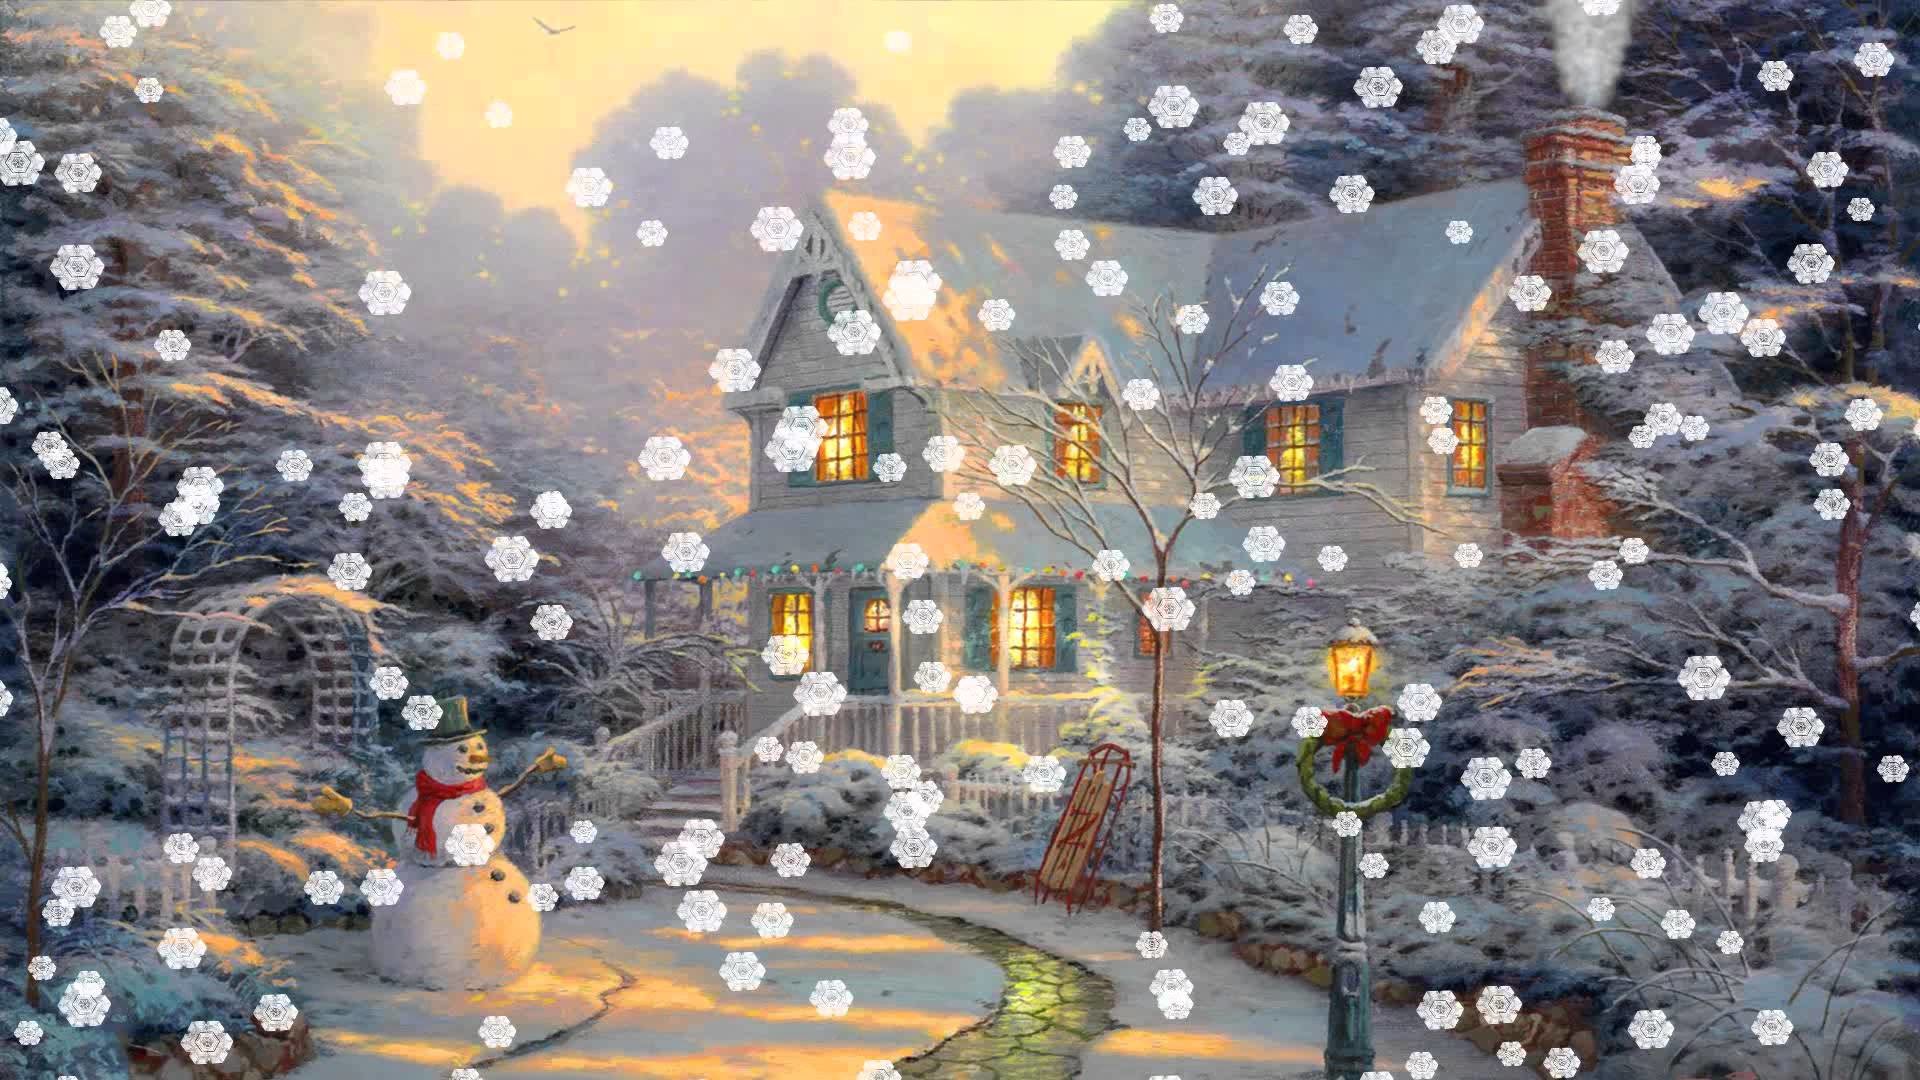 Christmas Eve Animated Wallpaper https://www.desktopanimated.com